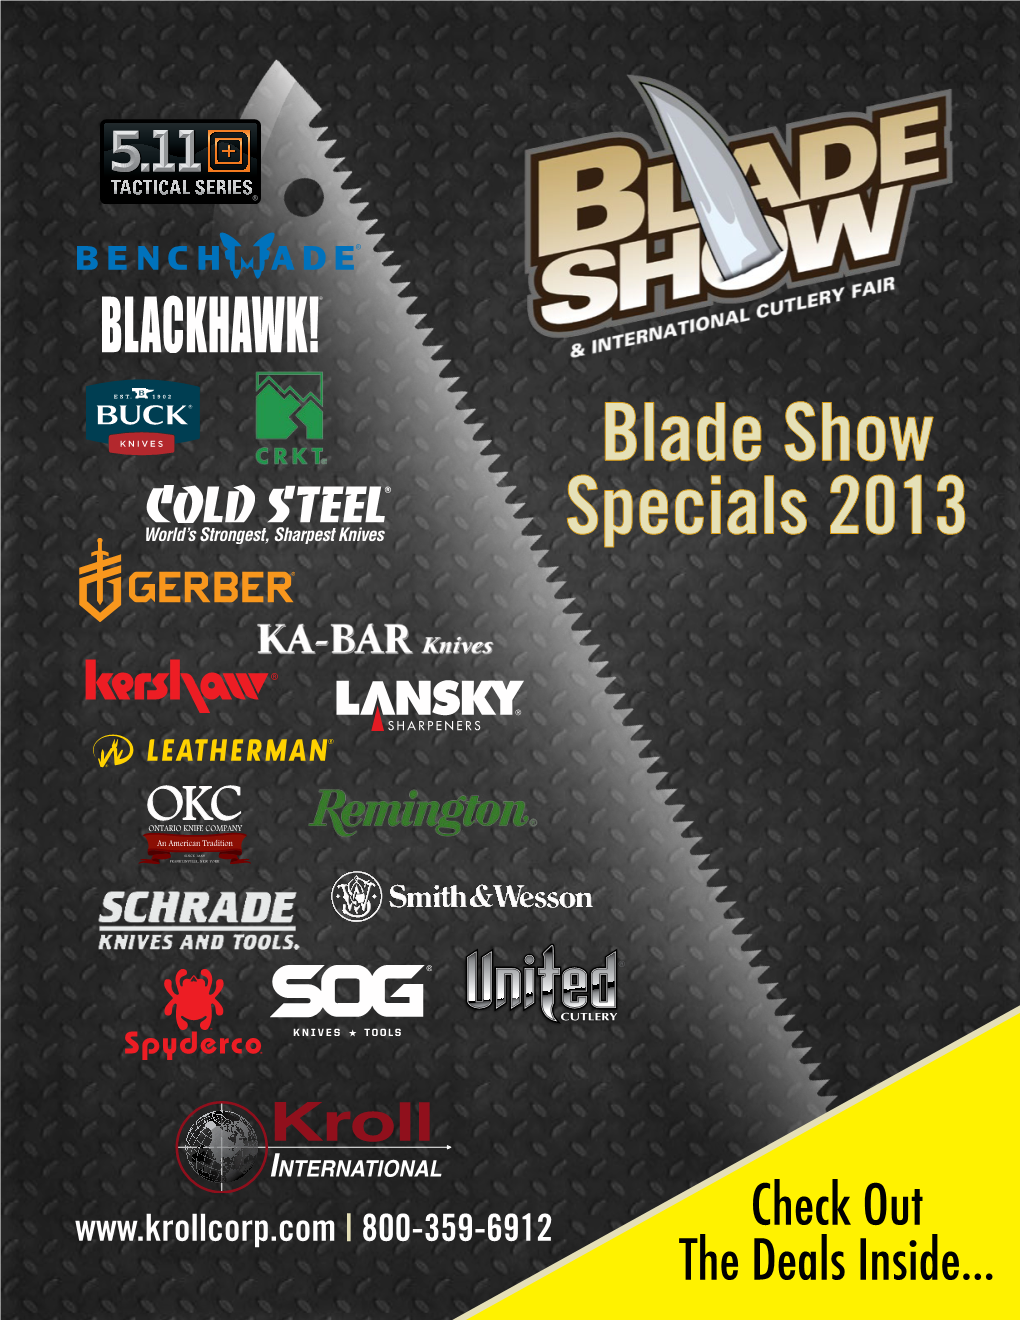 Blade Show Specials 2013